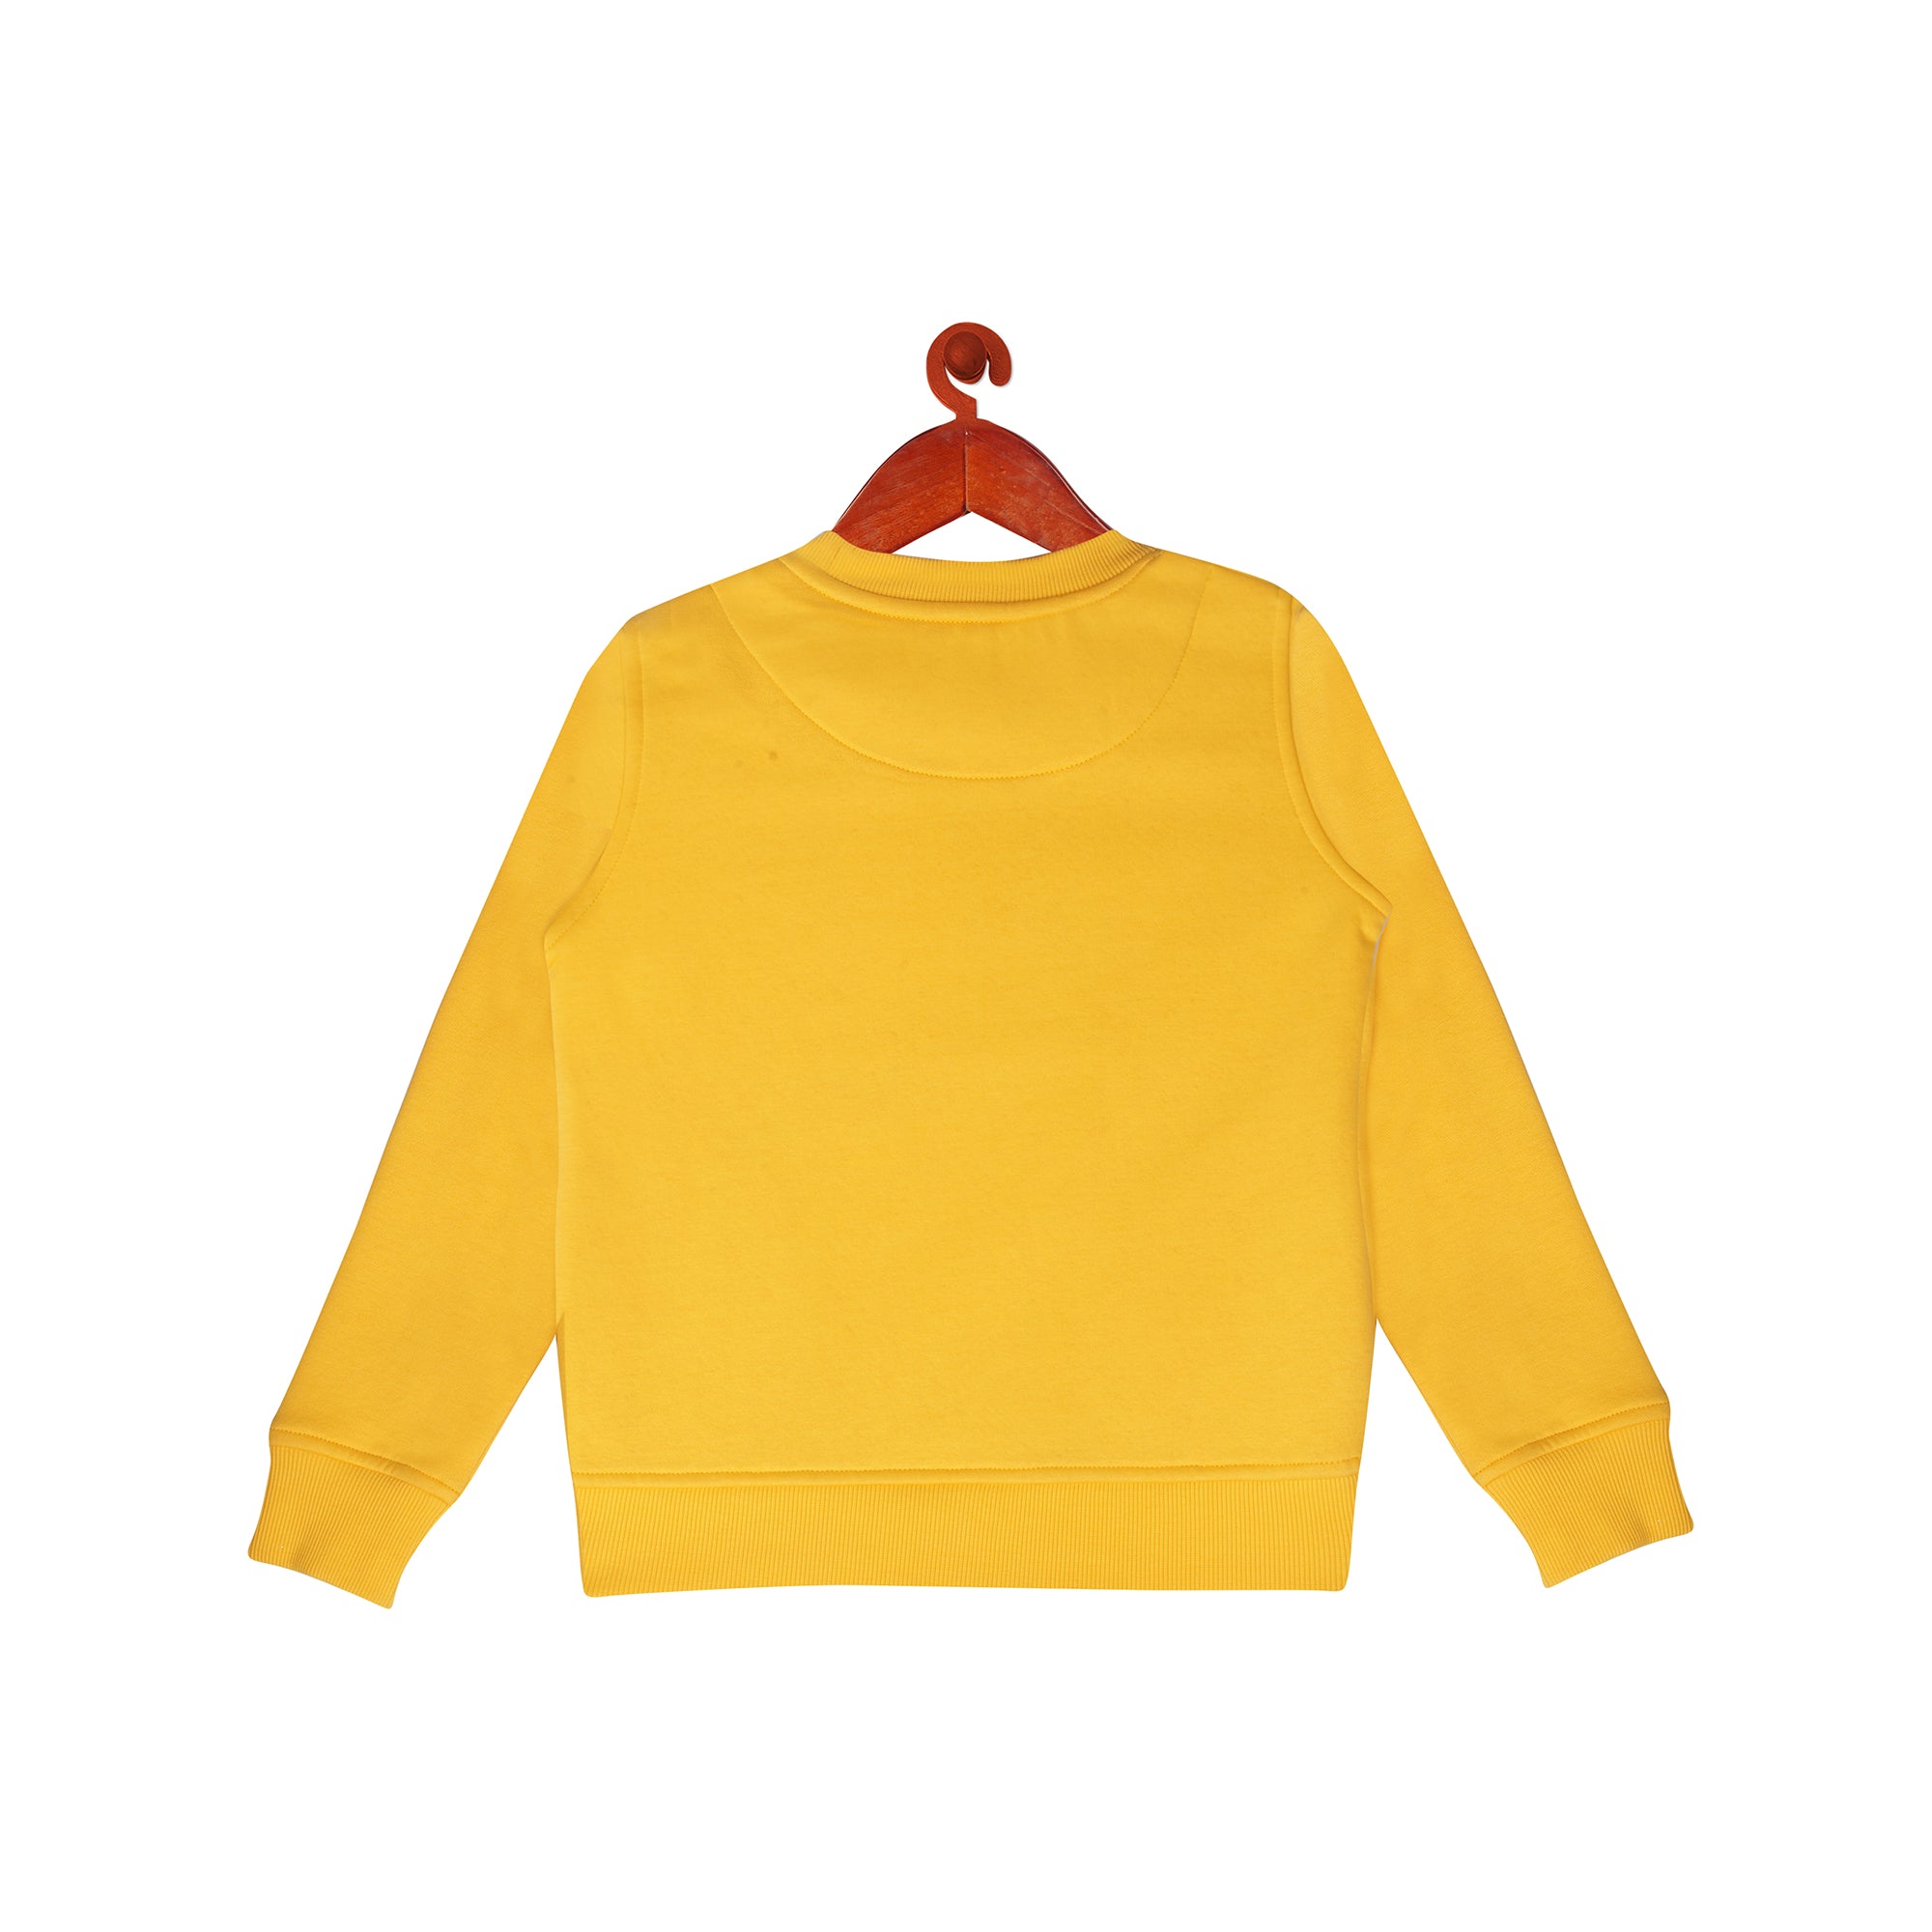 Oui! Sweatshirt In Mustard